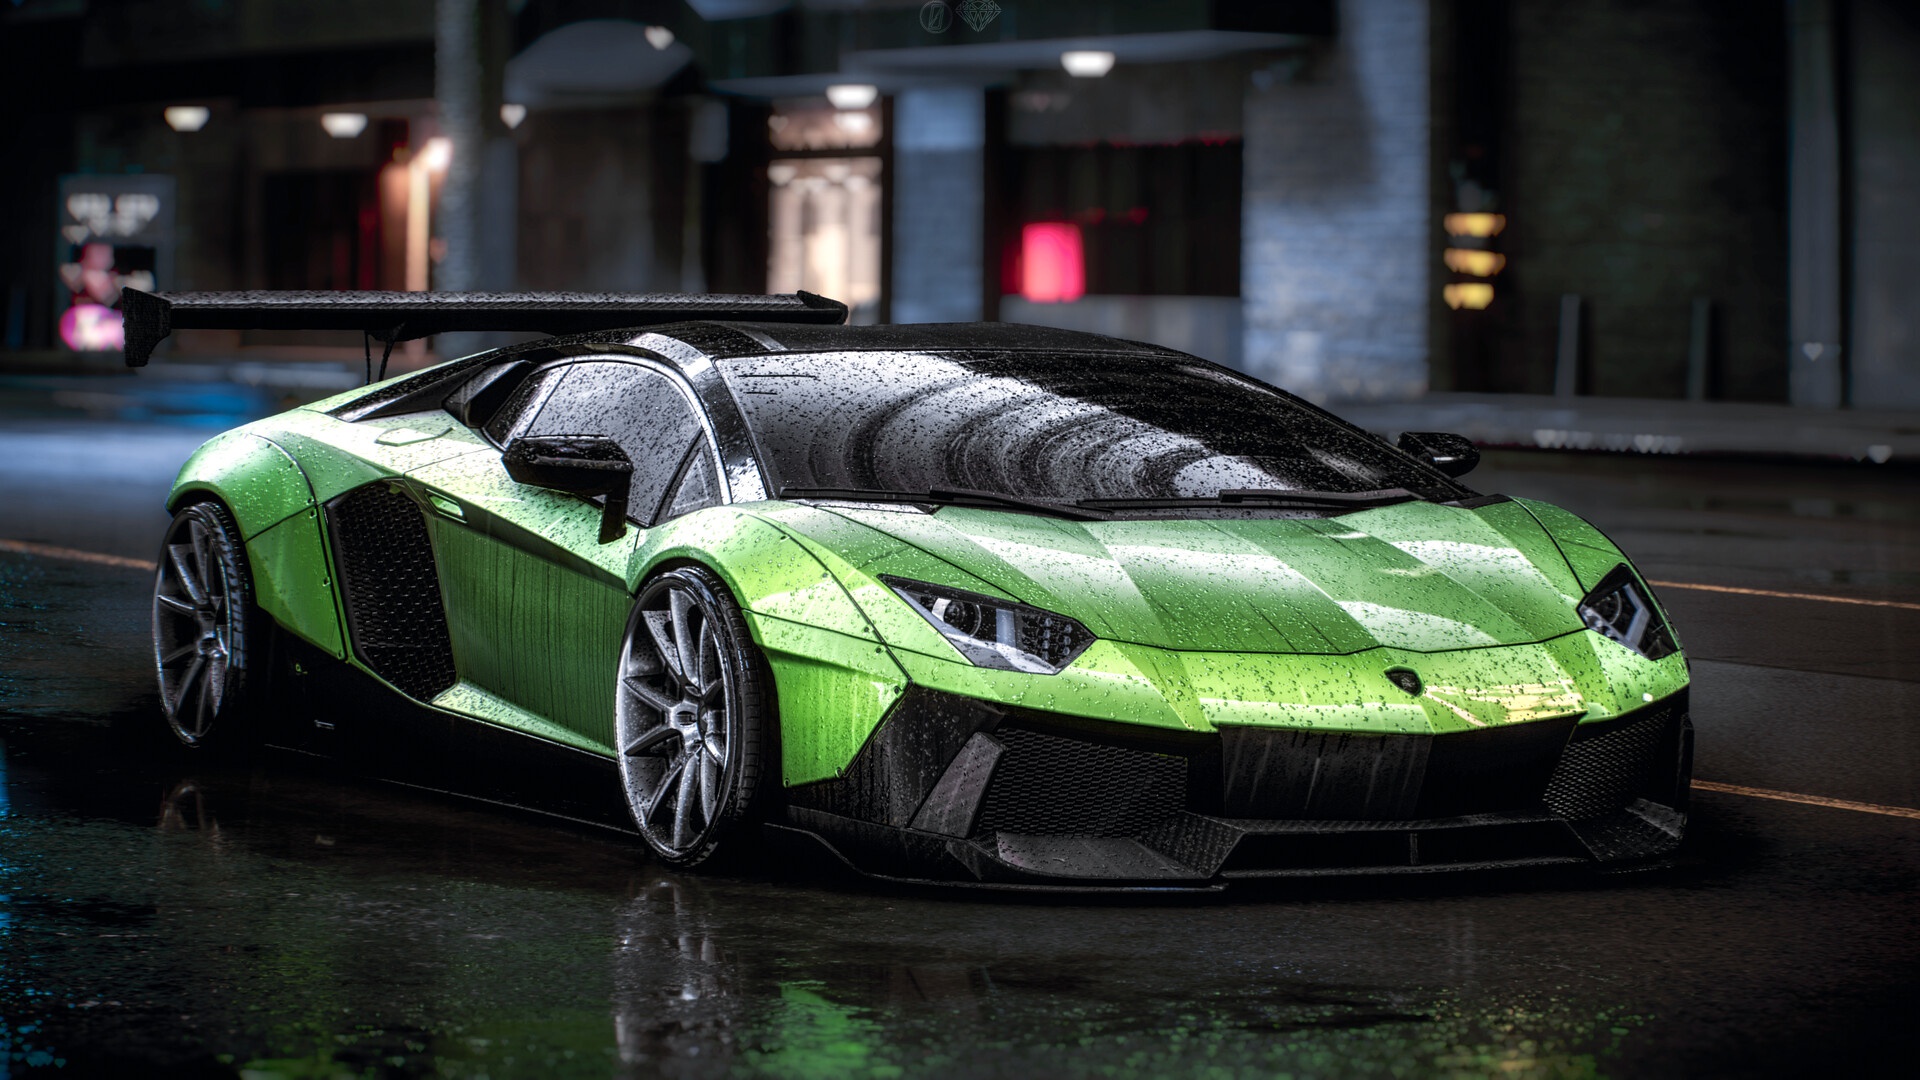 Lamborghini, car, green cars, vehicle, rain | 1920x1080 ...